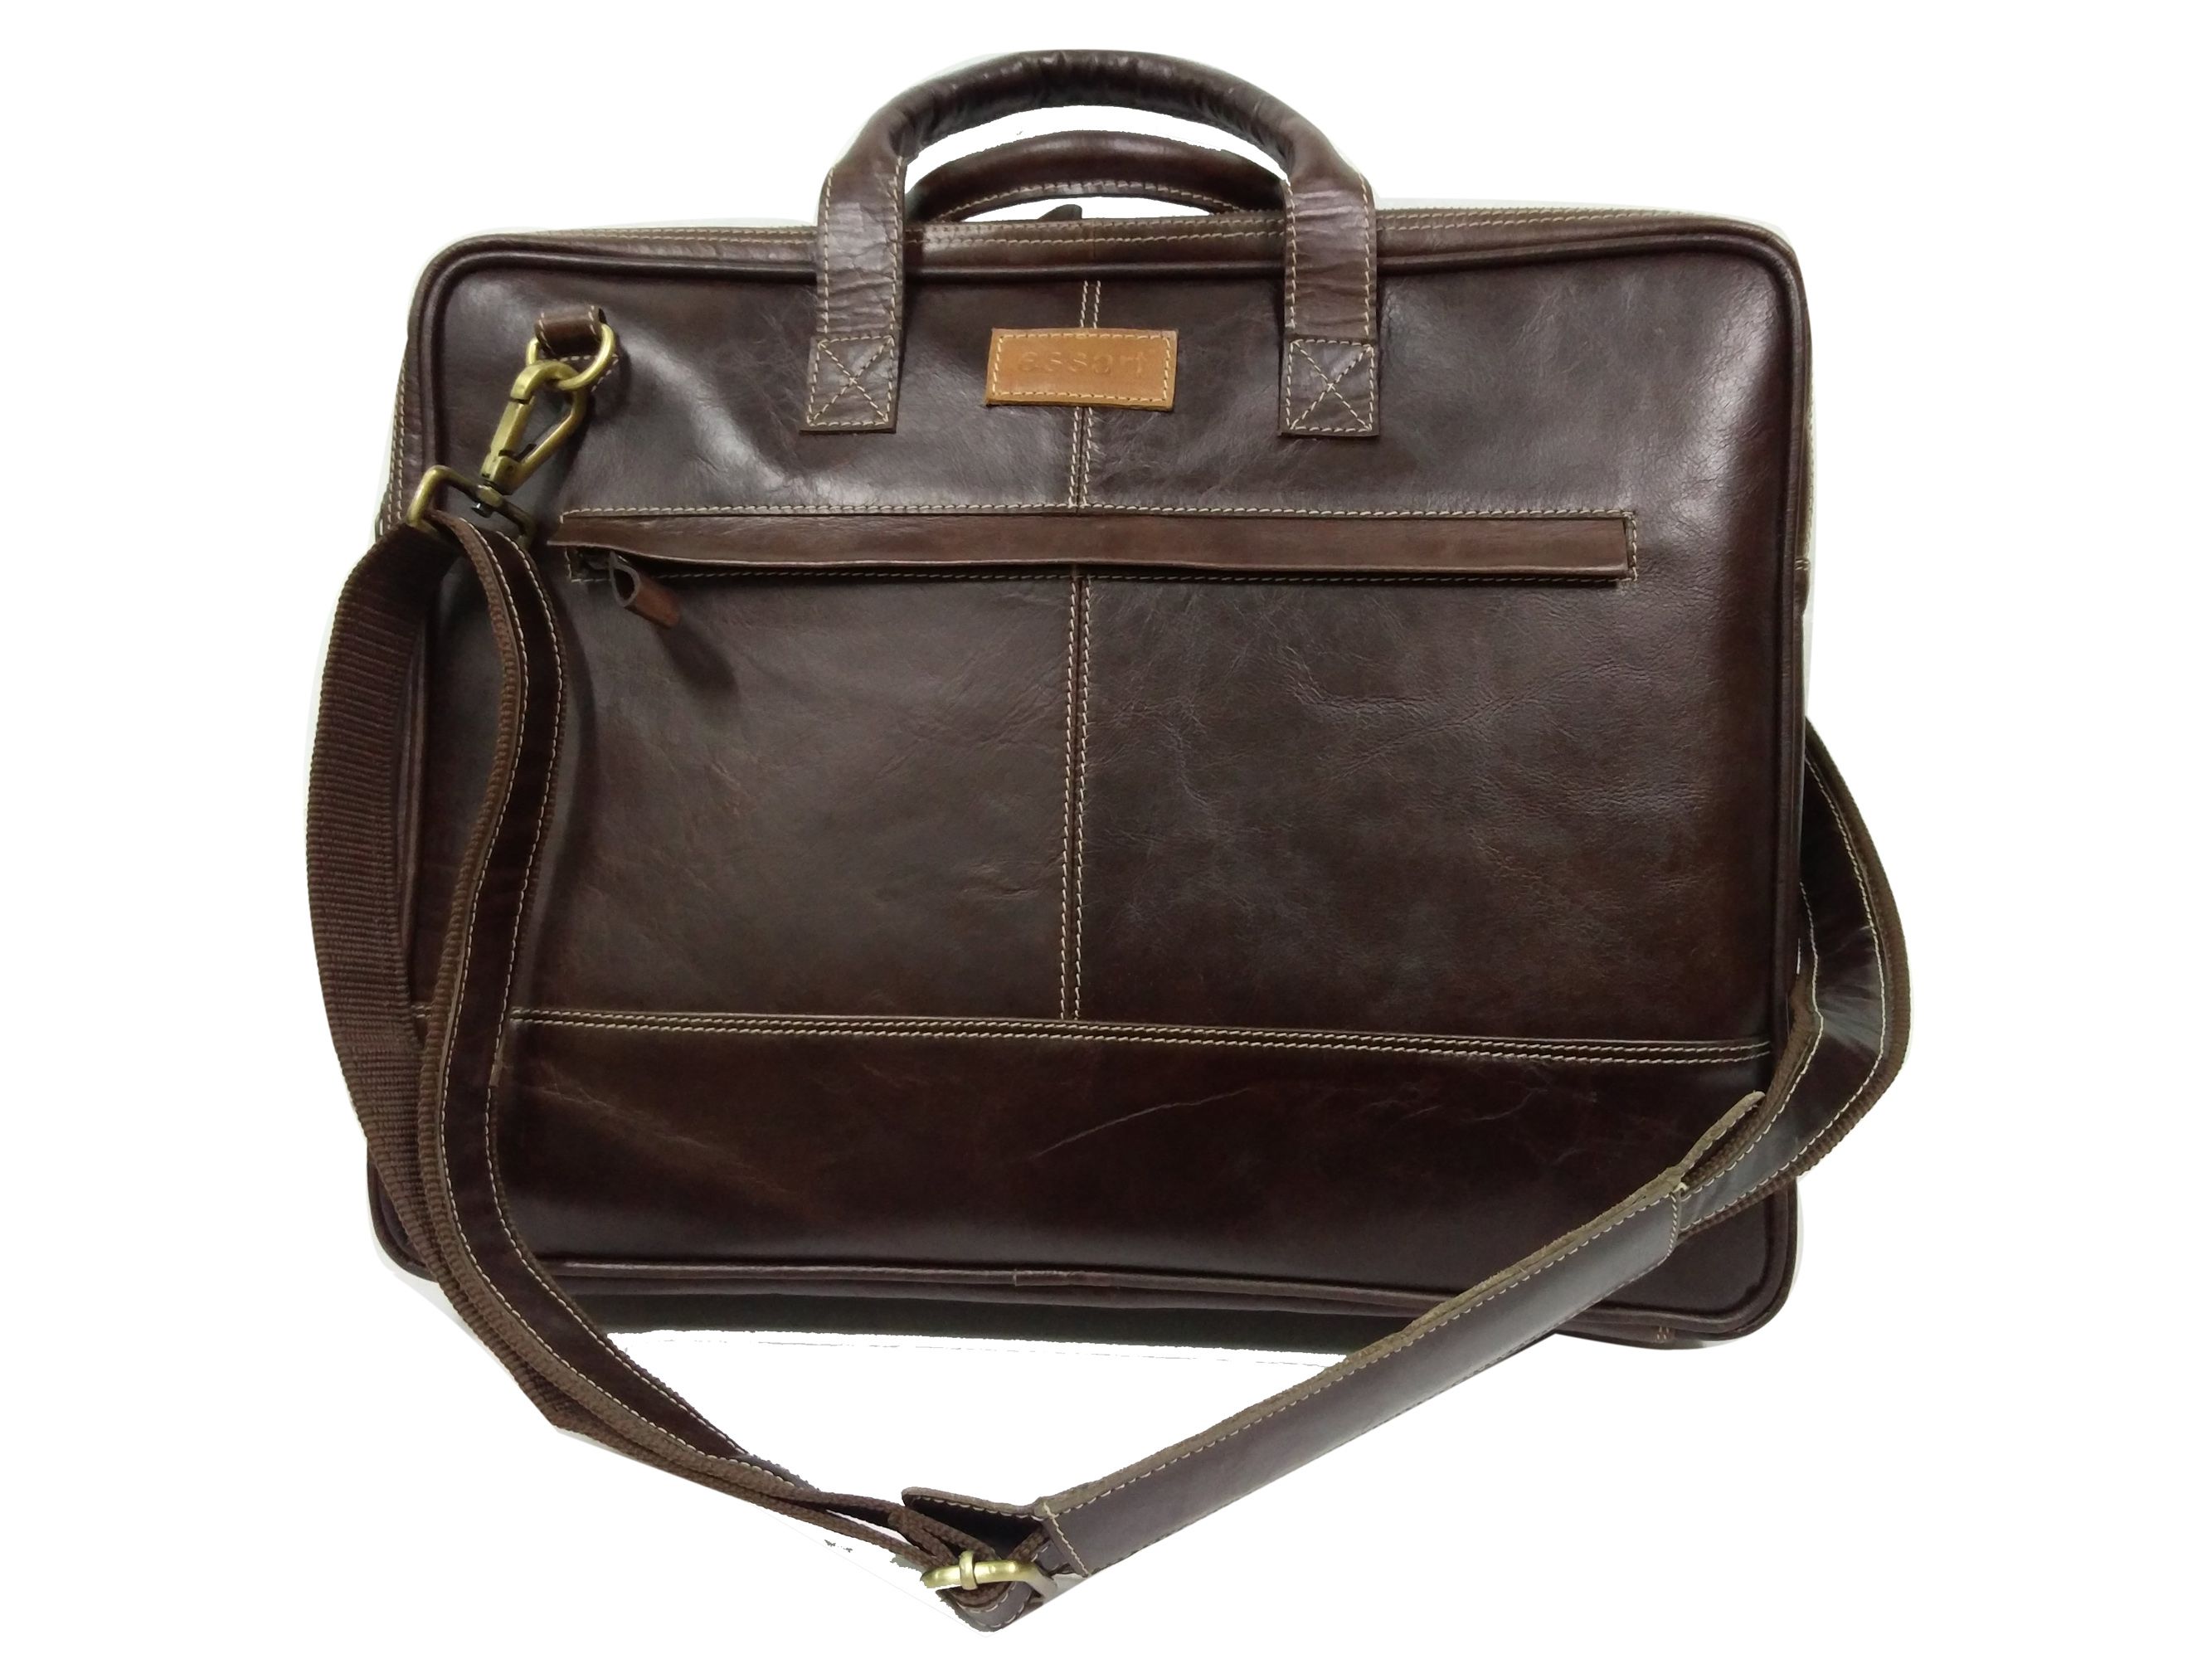 Essart Brown Leather Briefcase - Buy Essart Brown Leather Briefcase ...